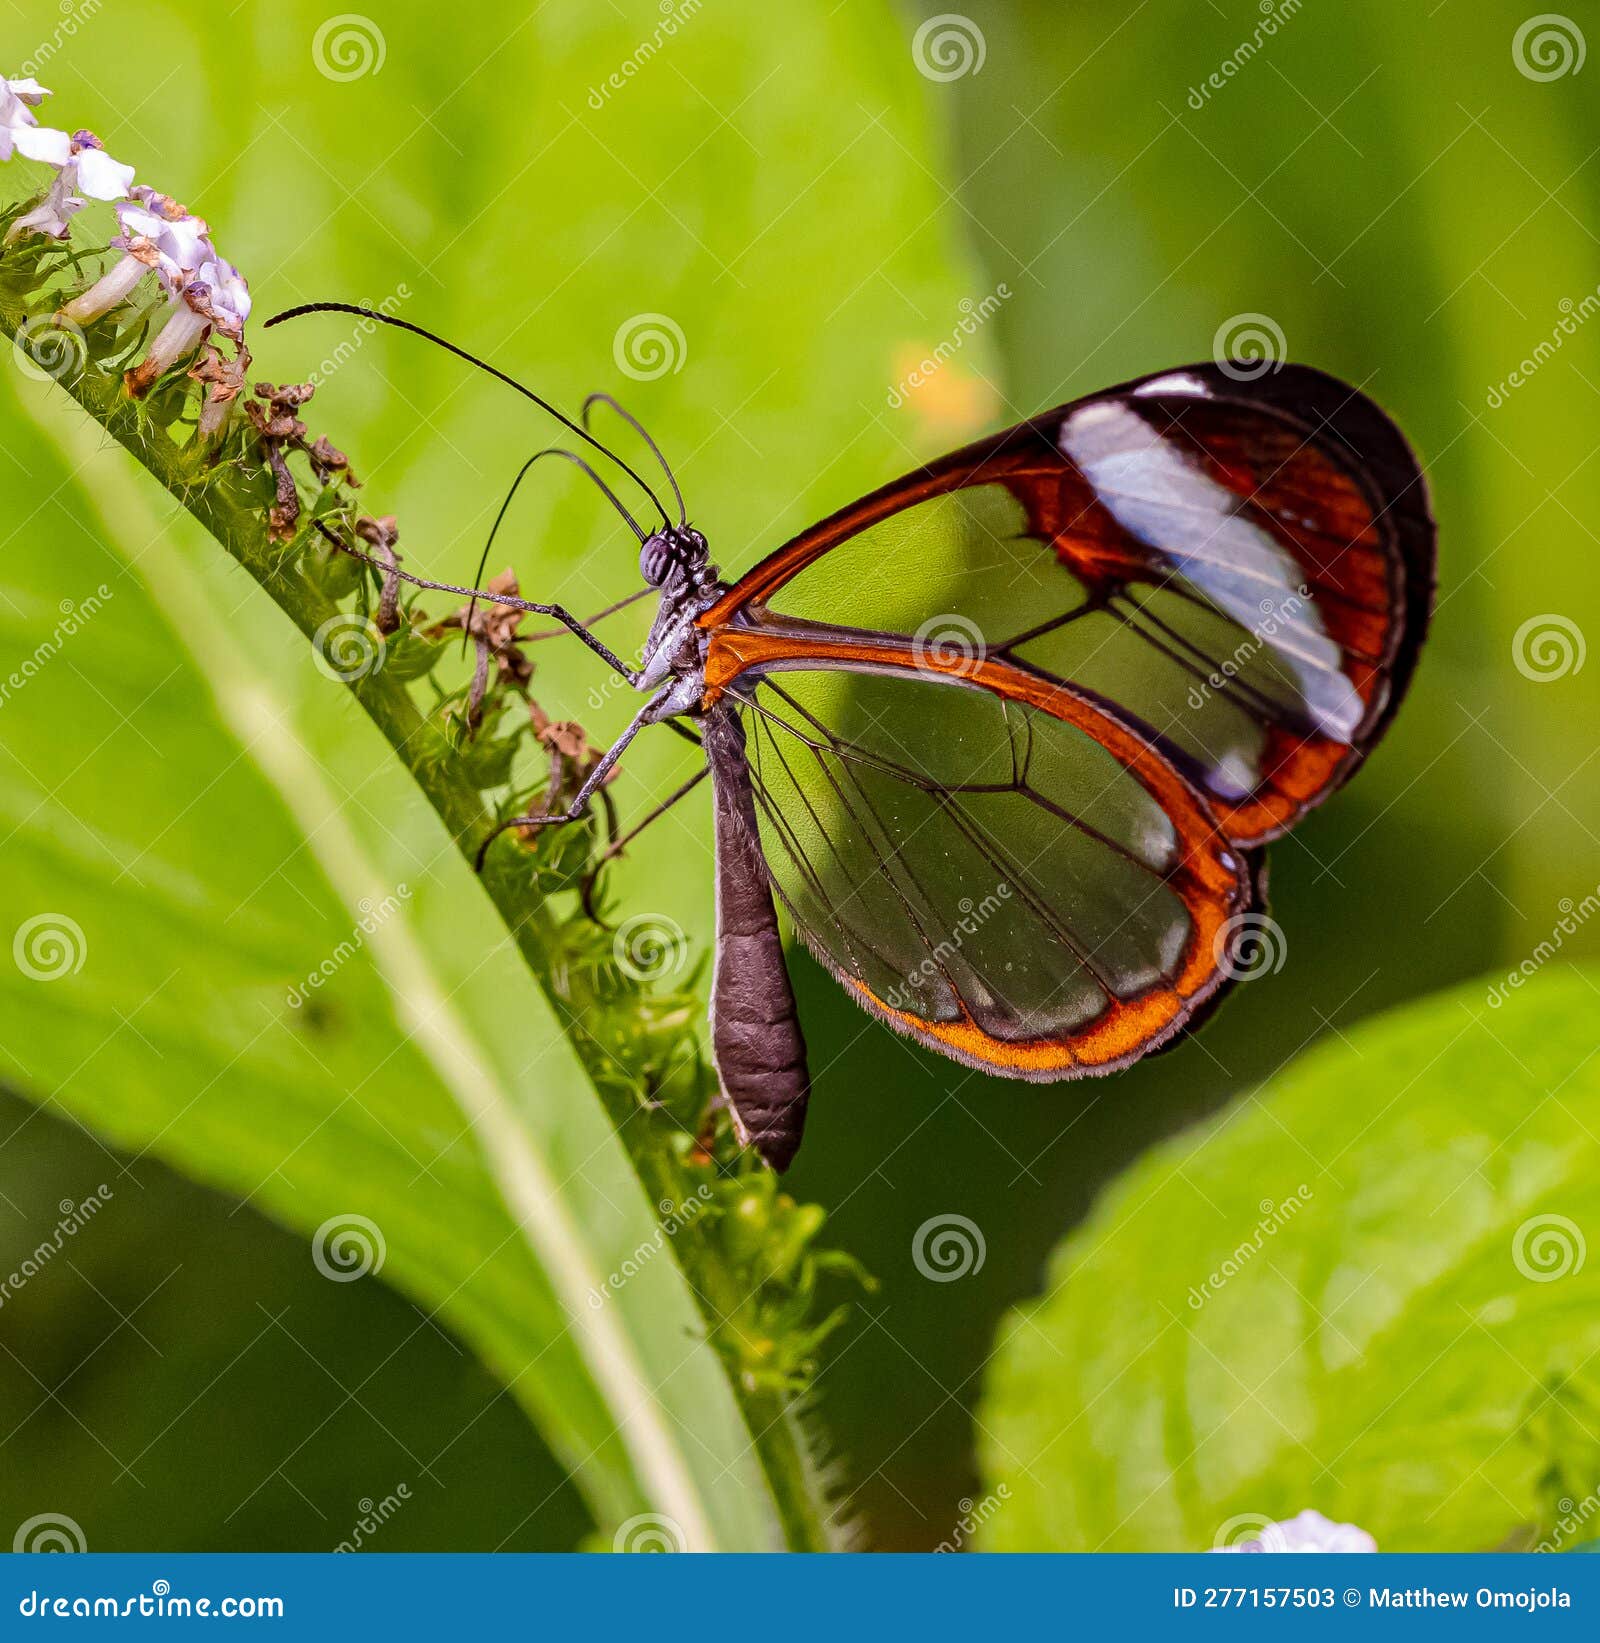 zsl butterfly paradise london zoo. the glasswing butterfly, greta oto